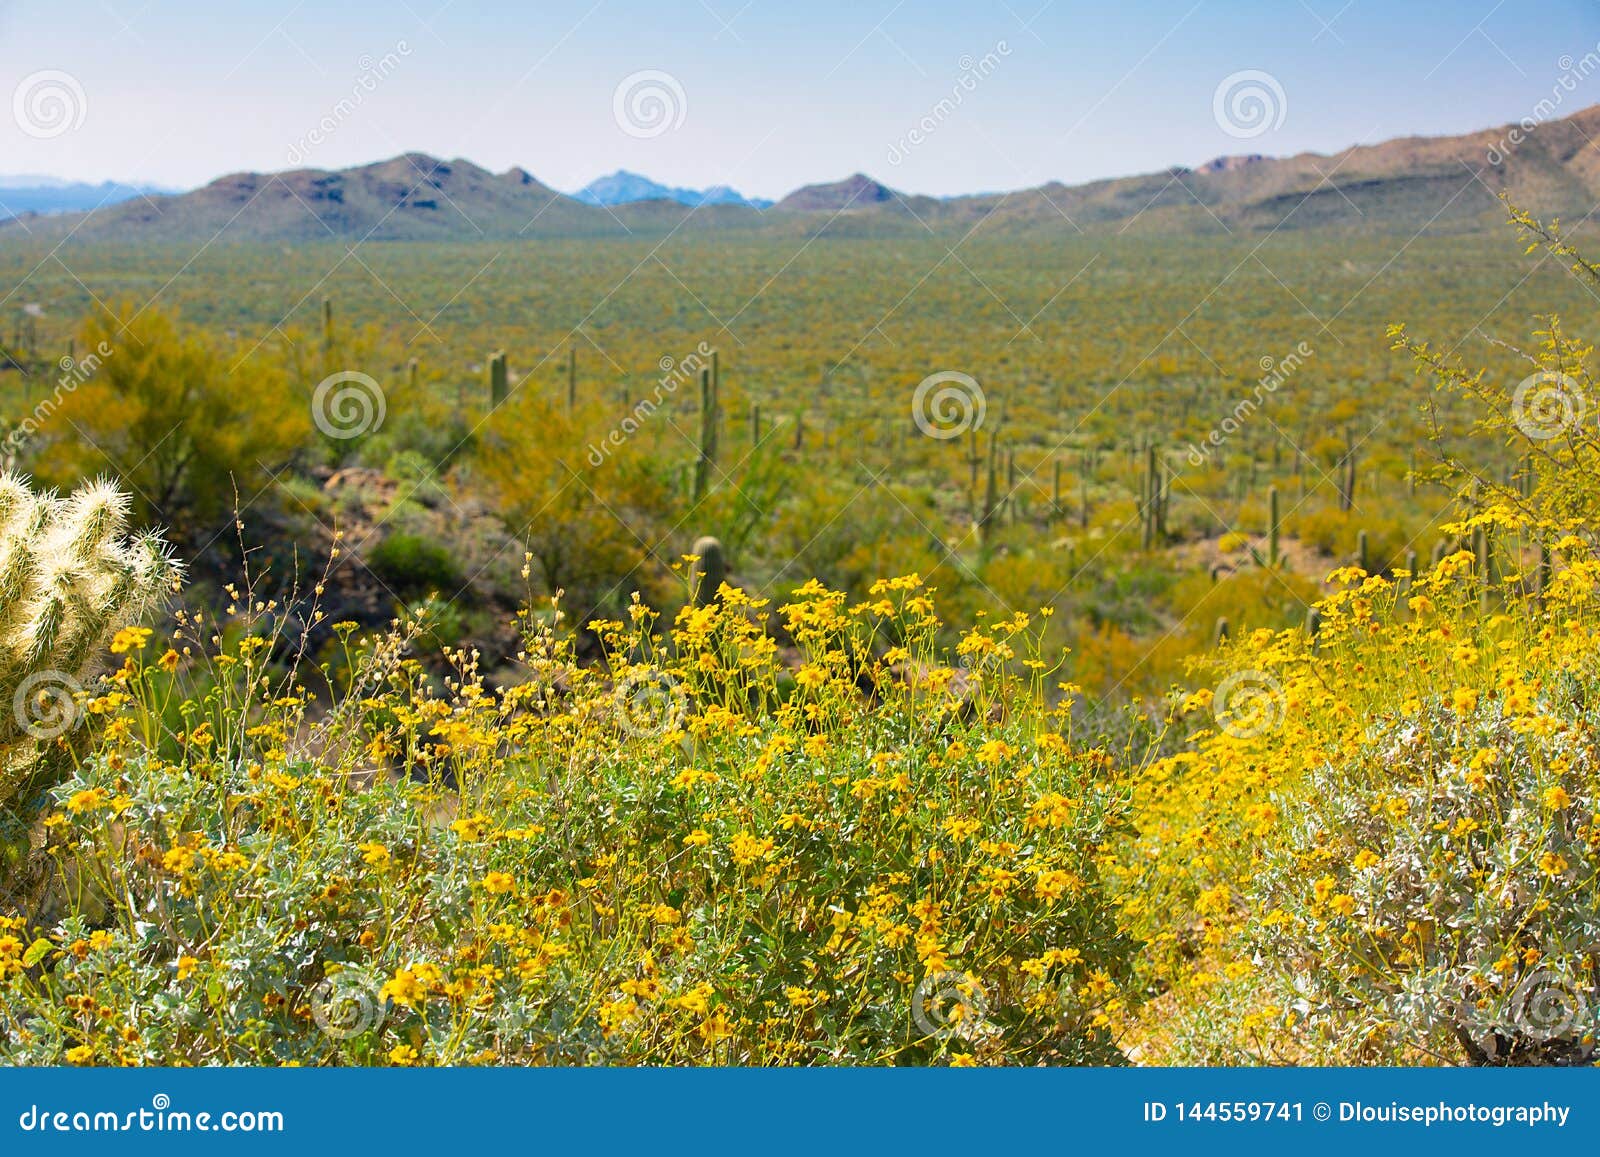 Arizona Saguaro National Park Wildflowers and Cactus Stock Image ...